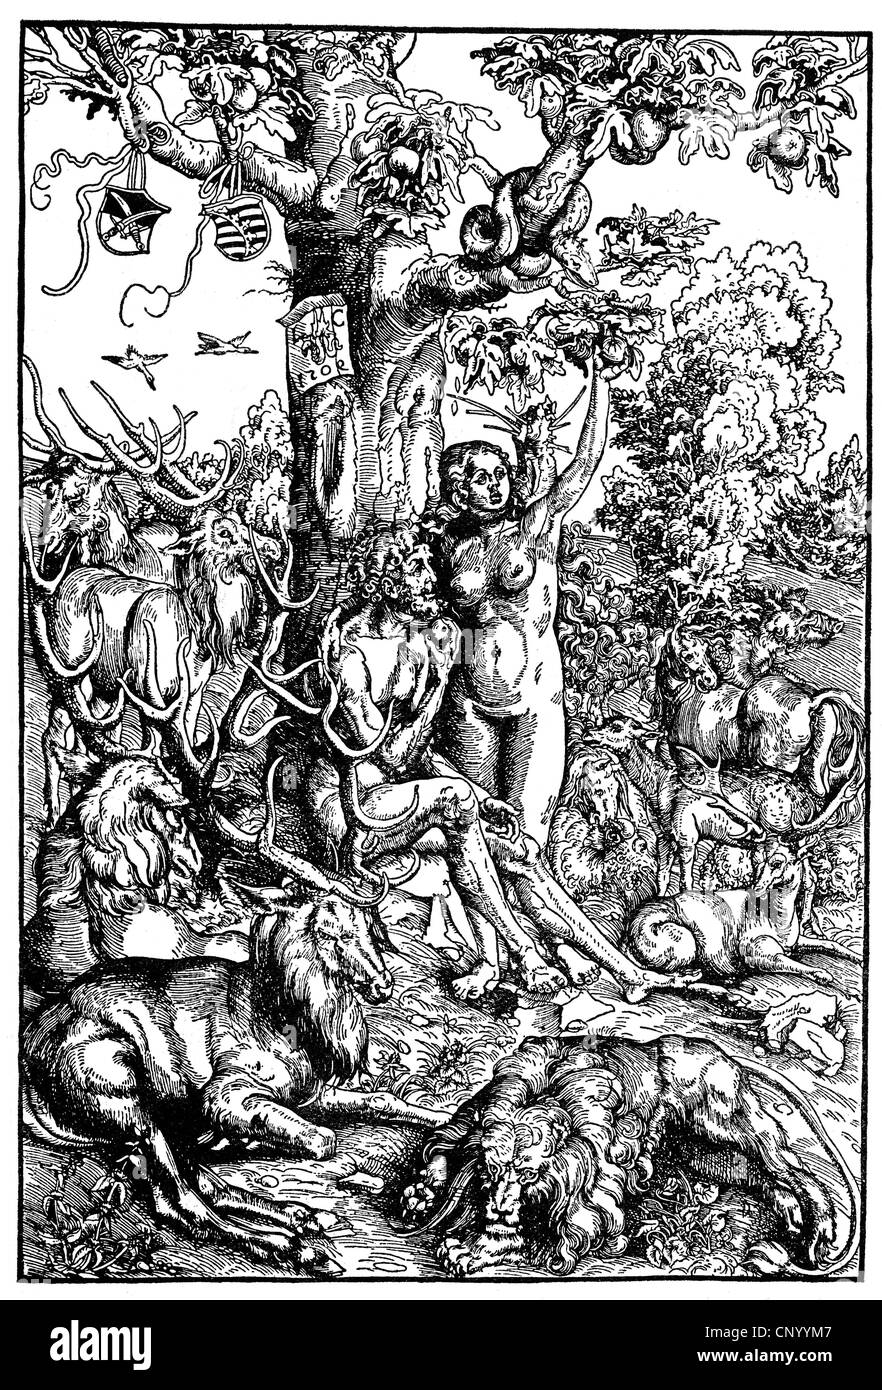 La religion, scènes bibliques, Adam et Eve au paradis, gravure sur bois par Lukas Cranach l'ancien, 1509, l'artiste n'a pas d'auteur pour être effacé Banque D'Images